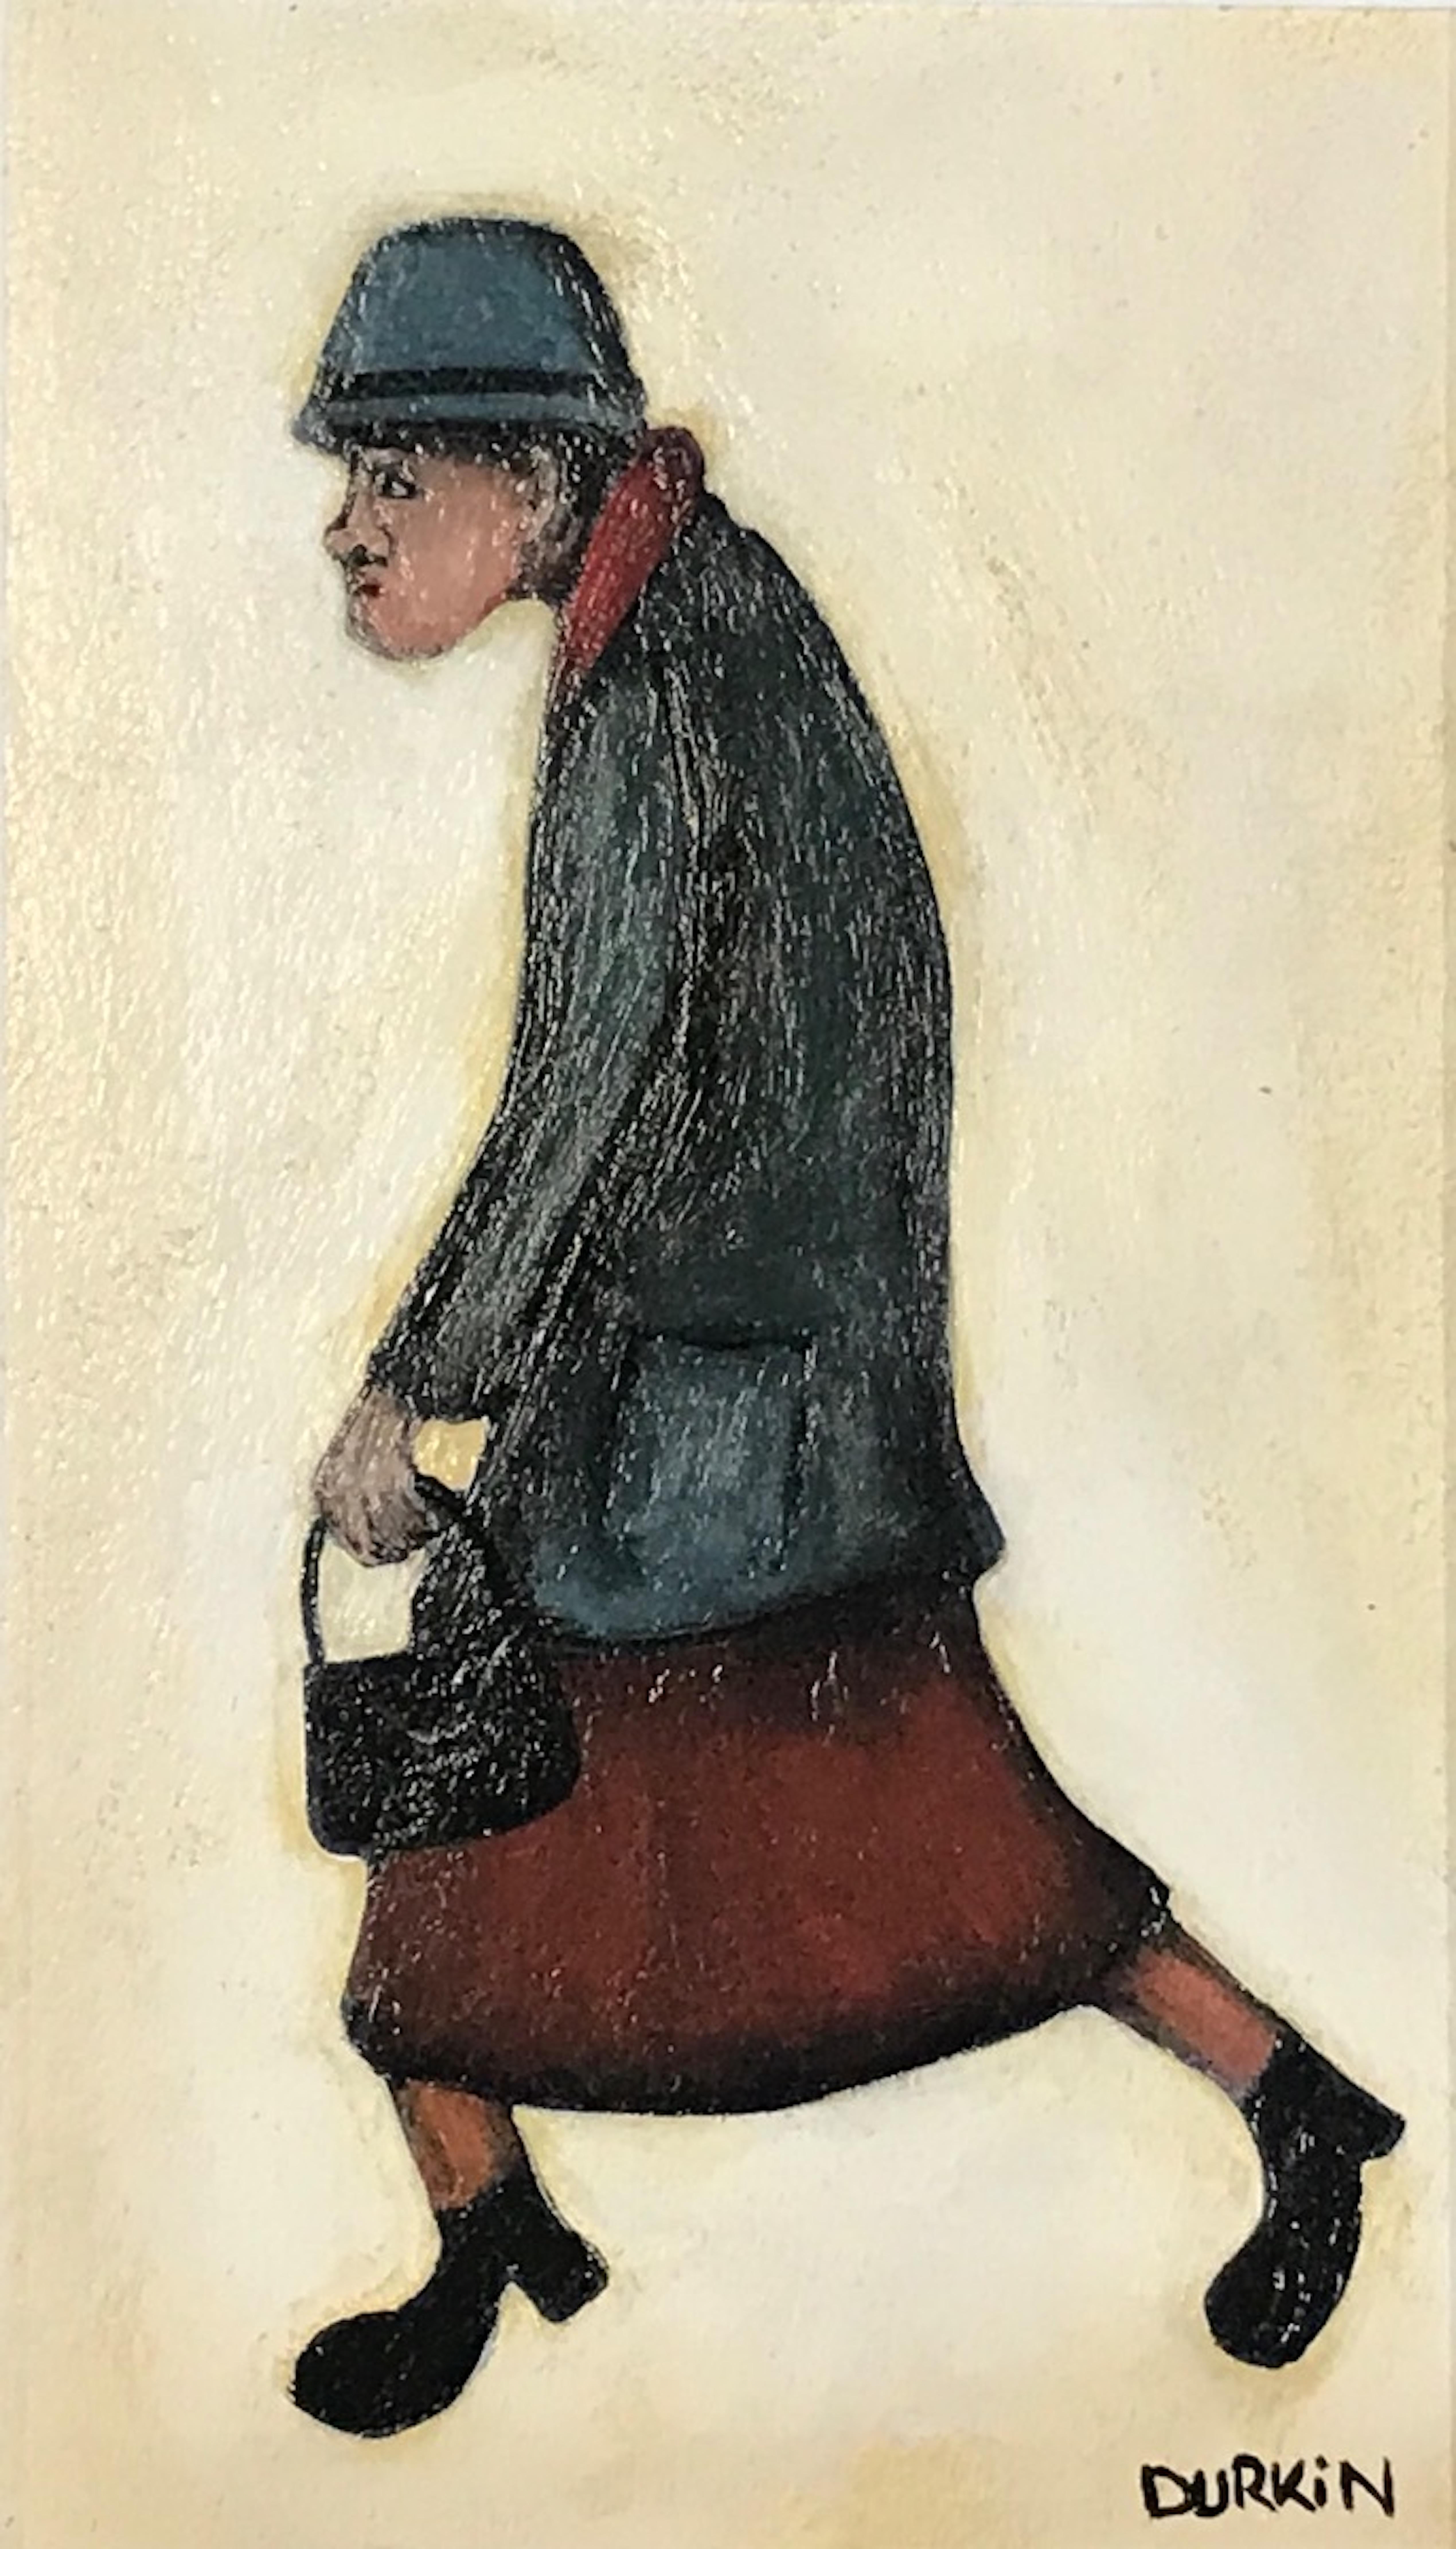 Originalgemälde von Lady on a walk von Sean Drukin. Sean verwendet sehr gedeckte Farben, lenkt aber die Aufmerksamkeit auf ihren roten Schal und ihren roten Rock.

ZUSÄTZLICHE INFORMATIONEN:
Acrylfarbe auf Leinwand
39,5 H x 30 B x 5 T cm (15,55 x